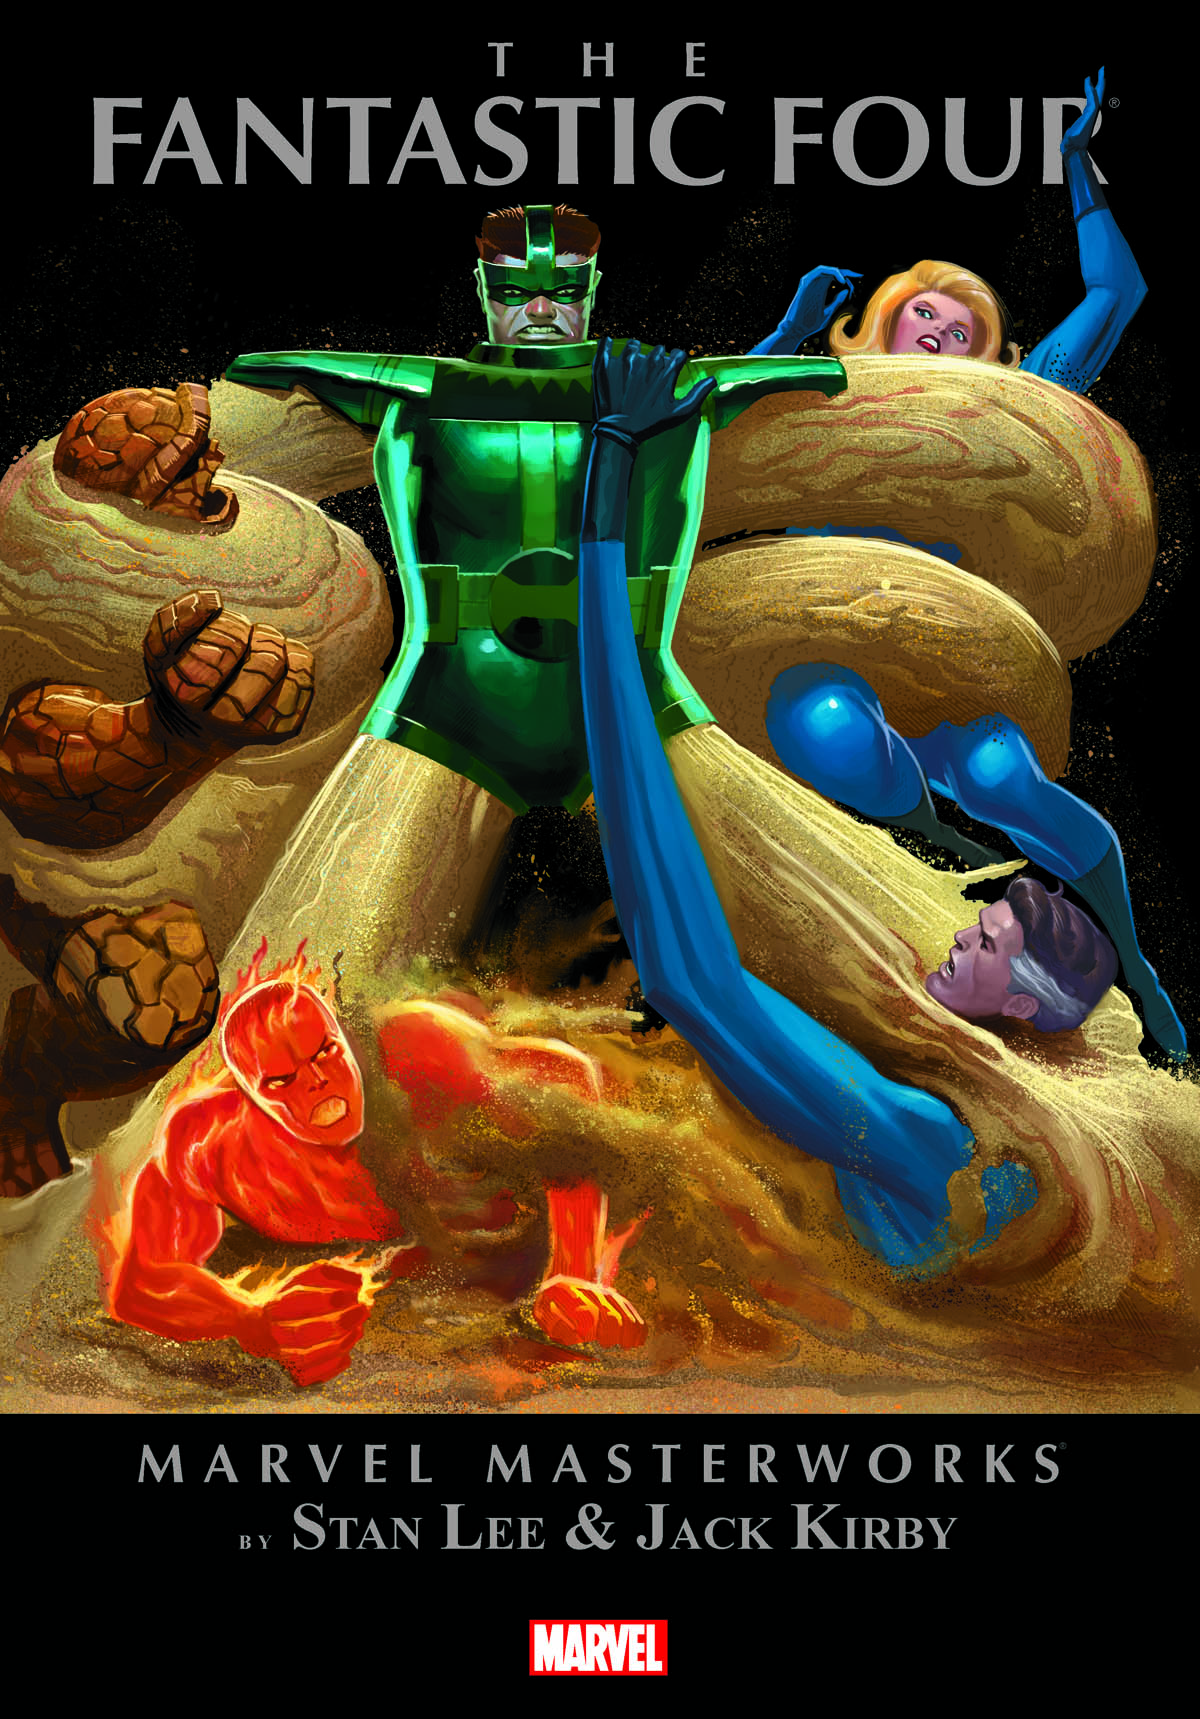 Marvel Masterworks: The Fantastic Four Vol. 7 (Trade Paperback)